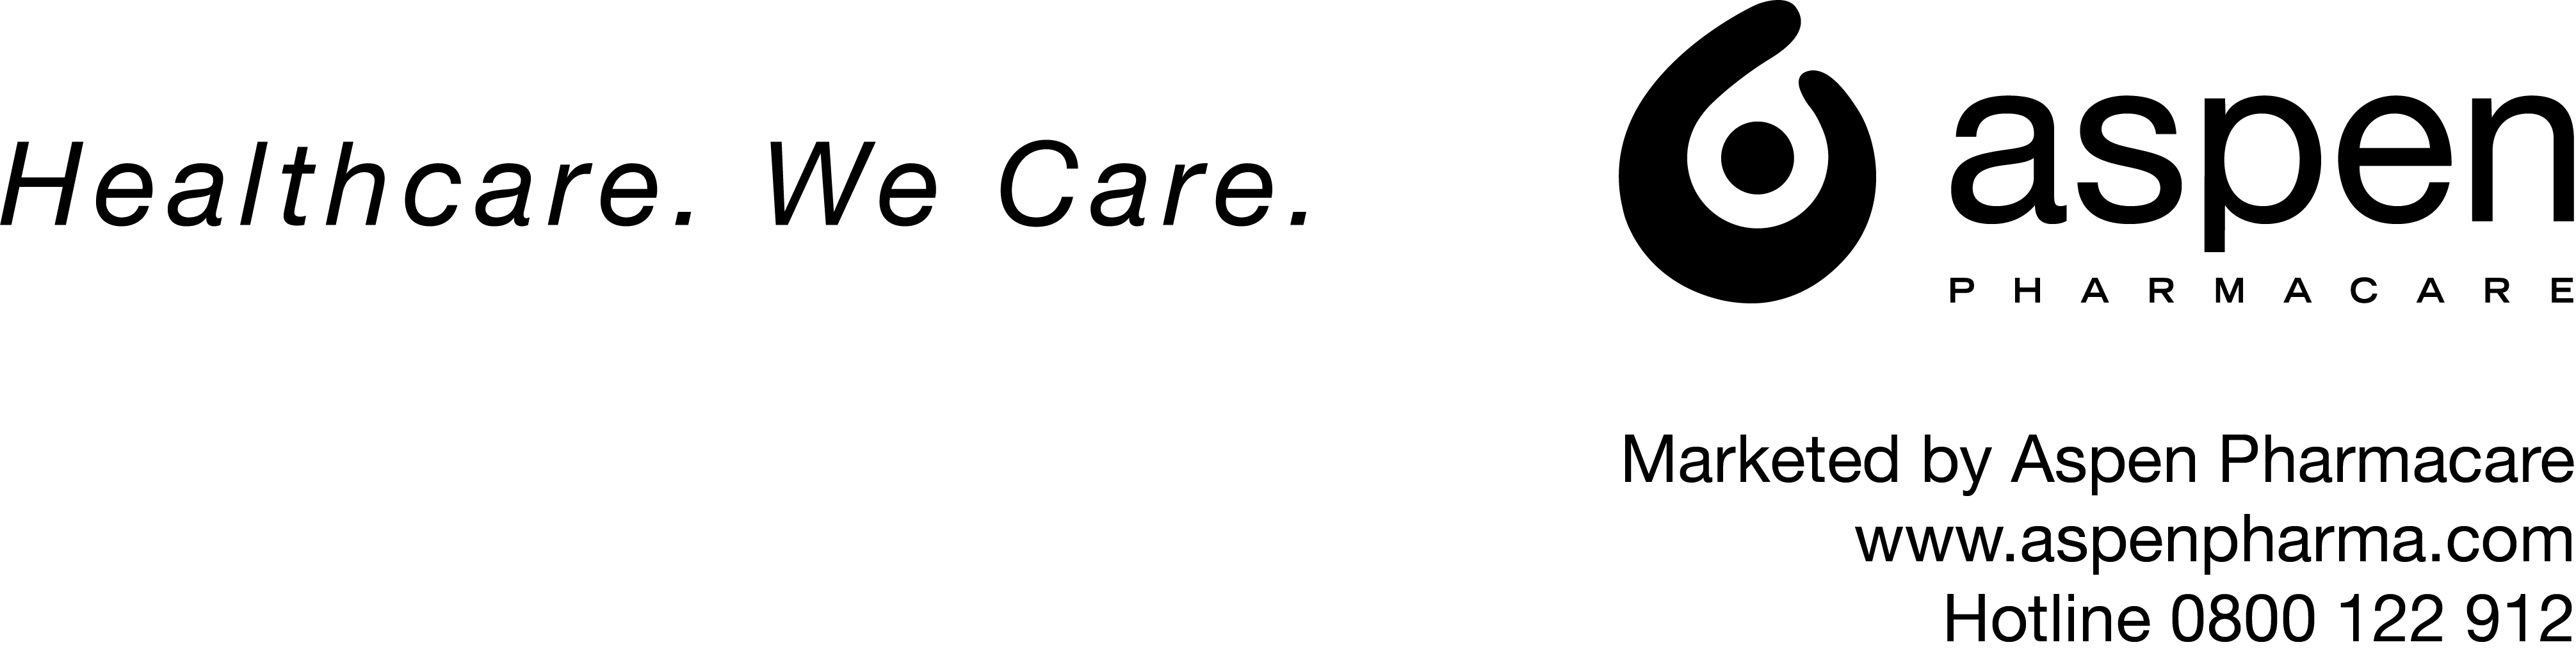 aspen-footer logo